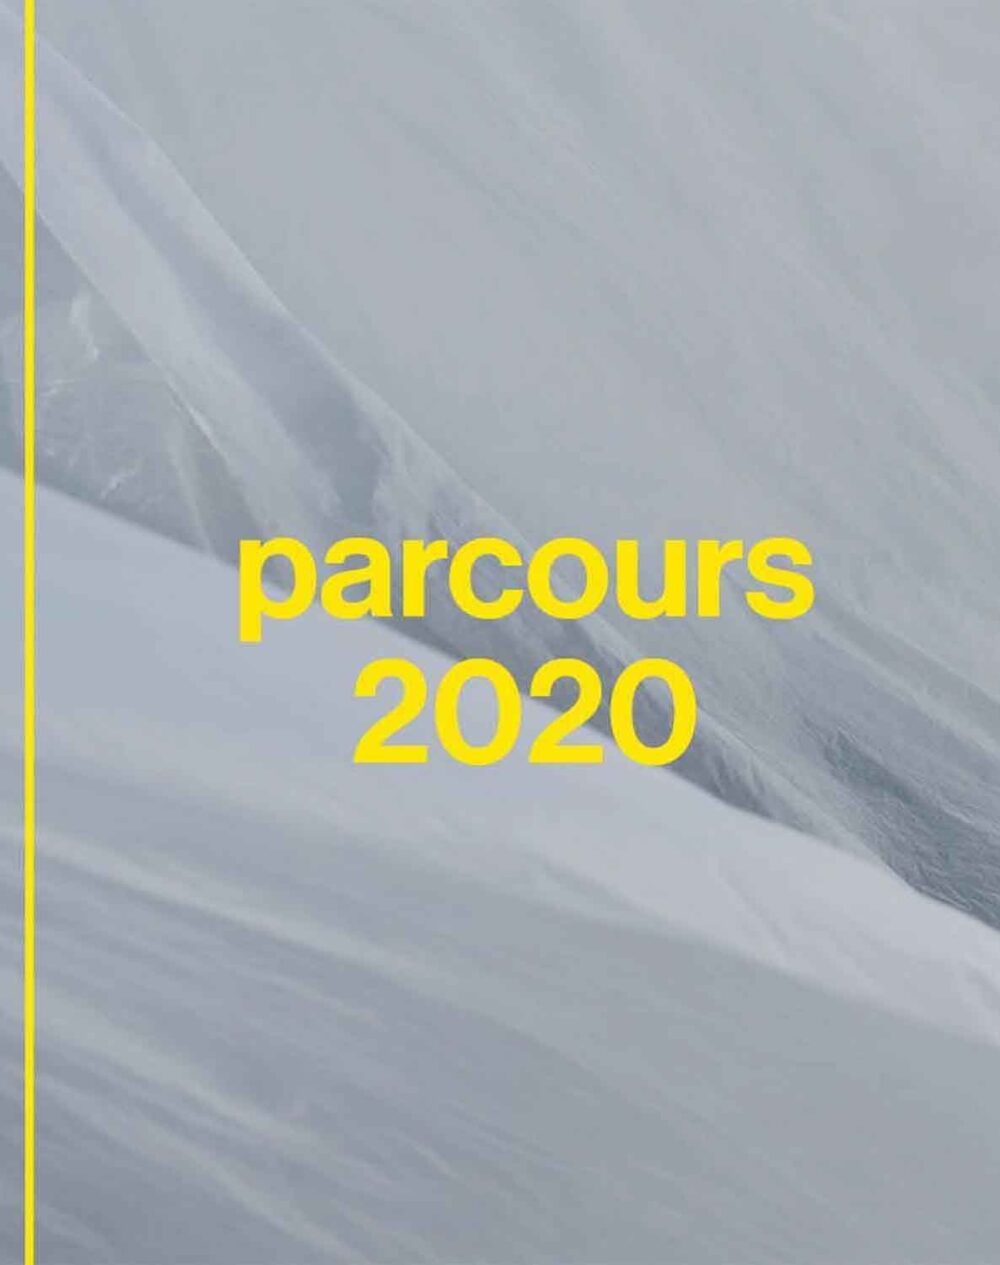 Parcours Summer 2020